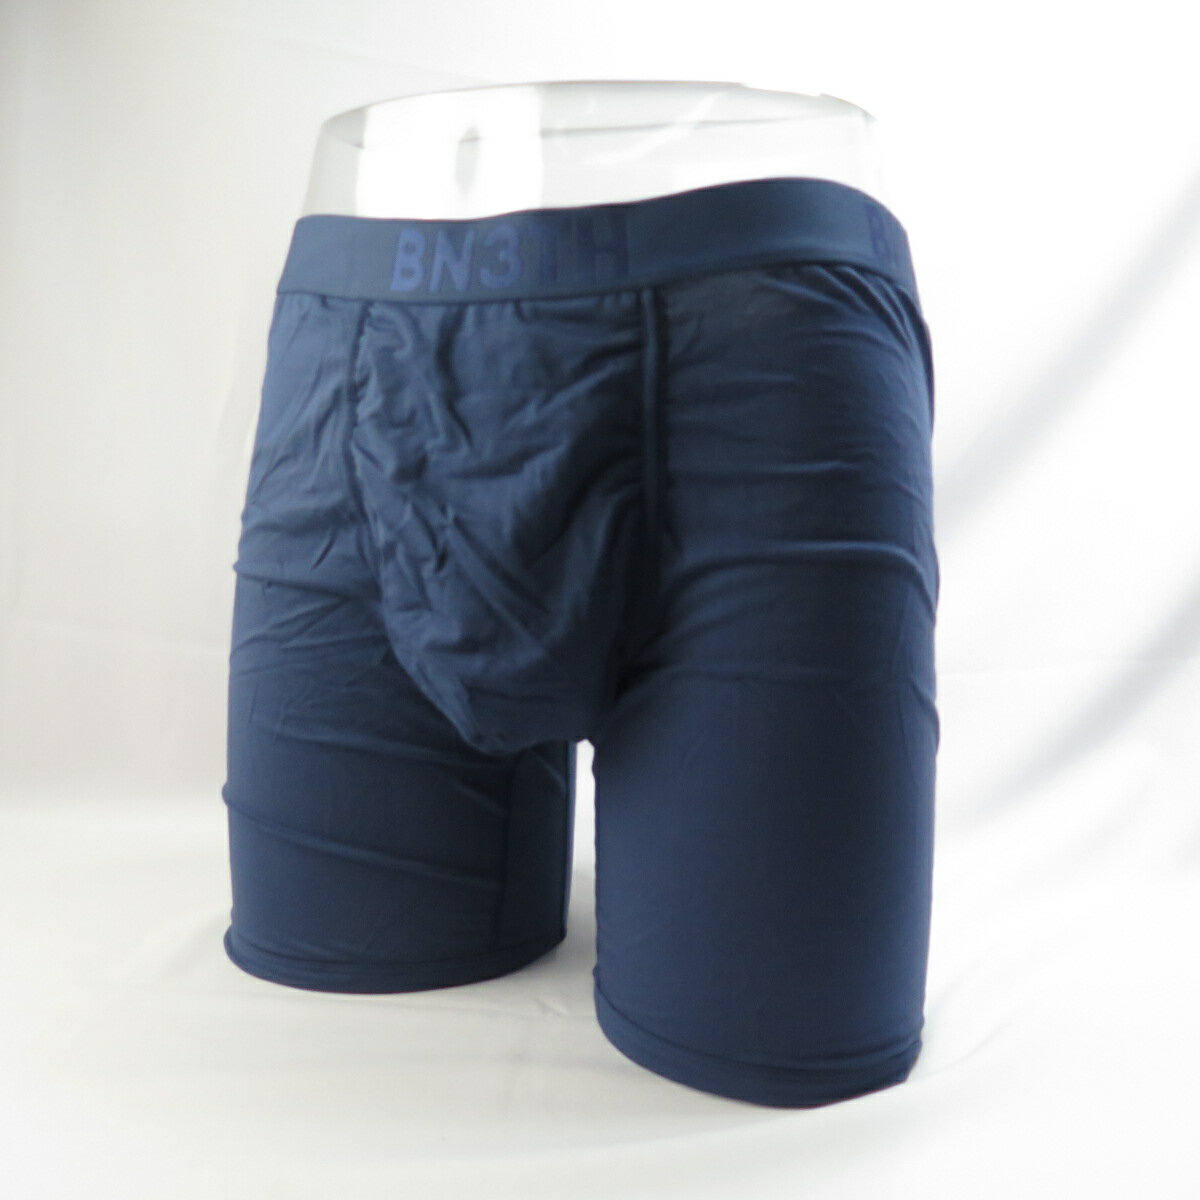 BN3TH 加拿大專櫃品牌 天絲 3D立體囊袋內褲 M1110210089 經典天絲-前開襠系列-深藍